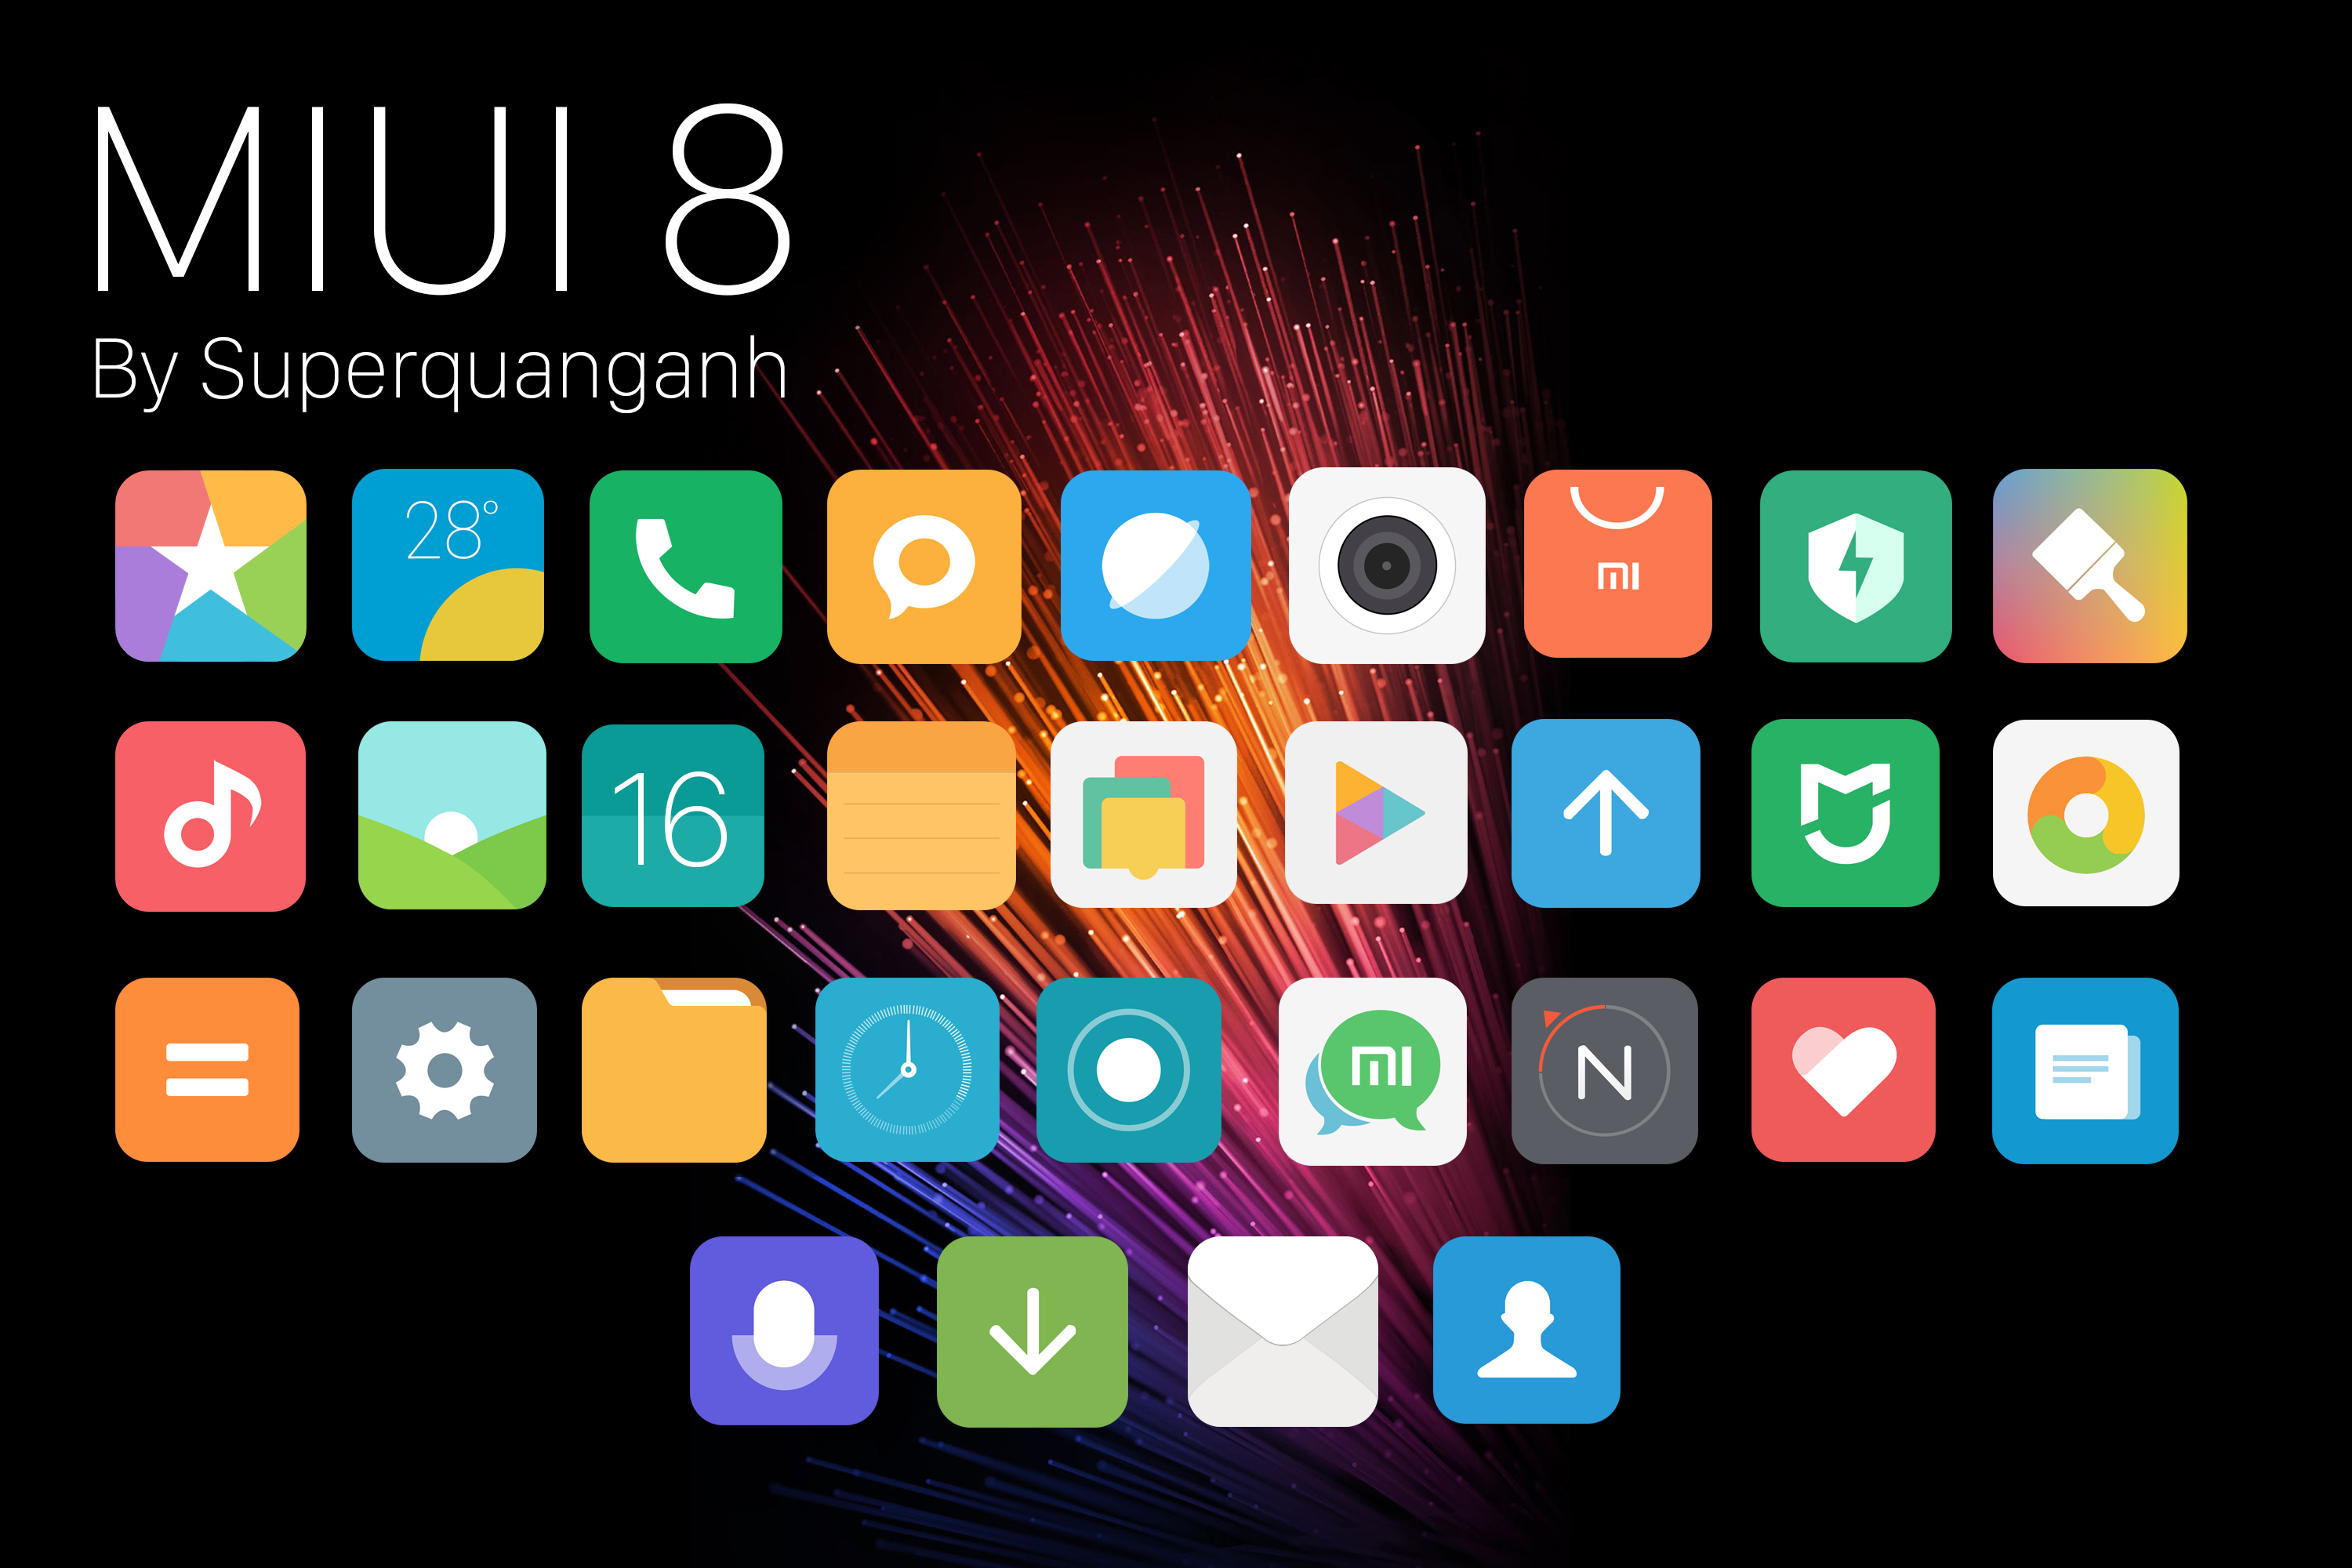 Miui icon pack. Иконки MIUI 12. MIUI 11 значки. Иконки приложений Xiaomi MIUI. Иконки для приложений Android Xiaomi MIUI 12.